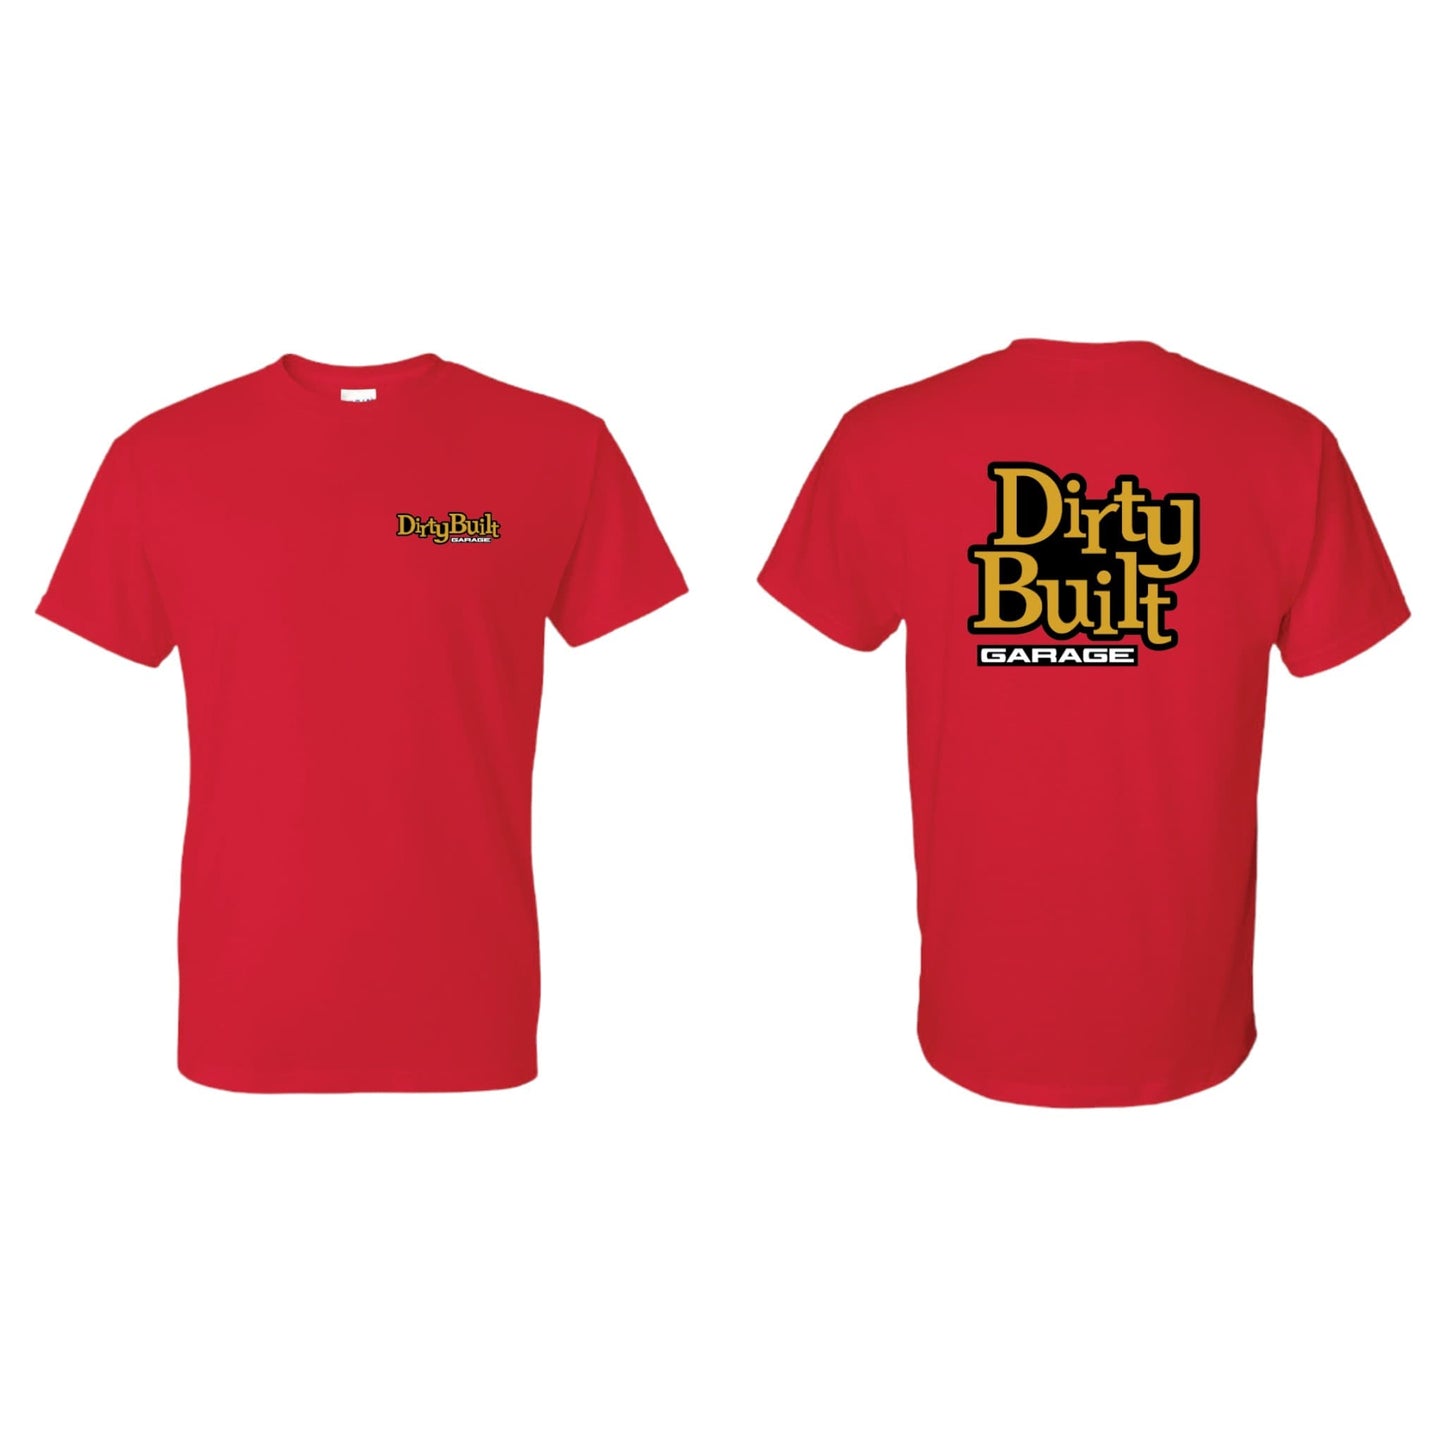 Dirty-Built-Garage-Shirt-Red-1